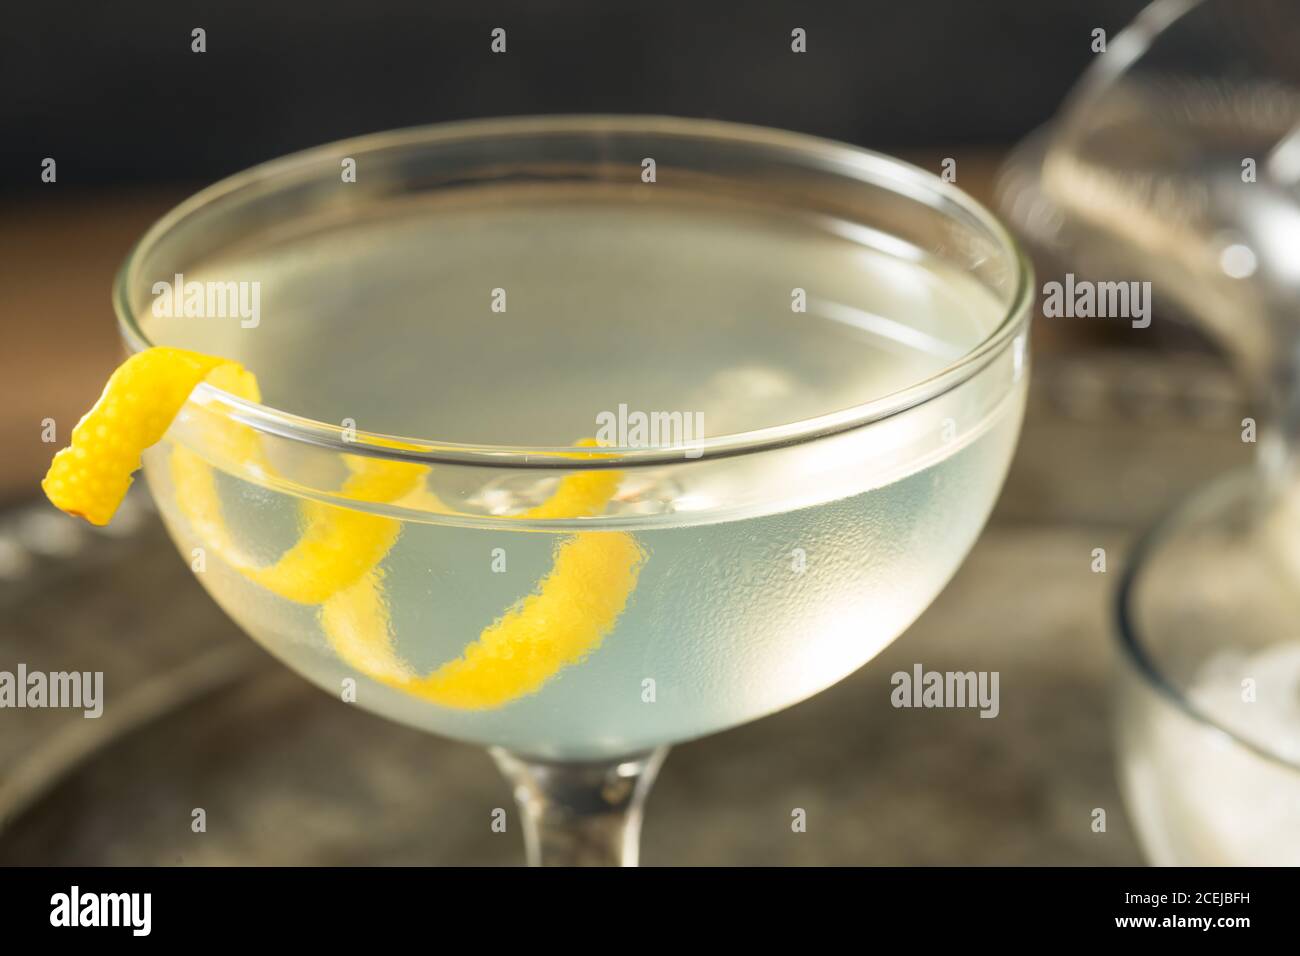 Rinfrescante Martini secco con una Garnish al limone e Vermouth Foto Stock